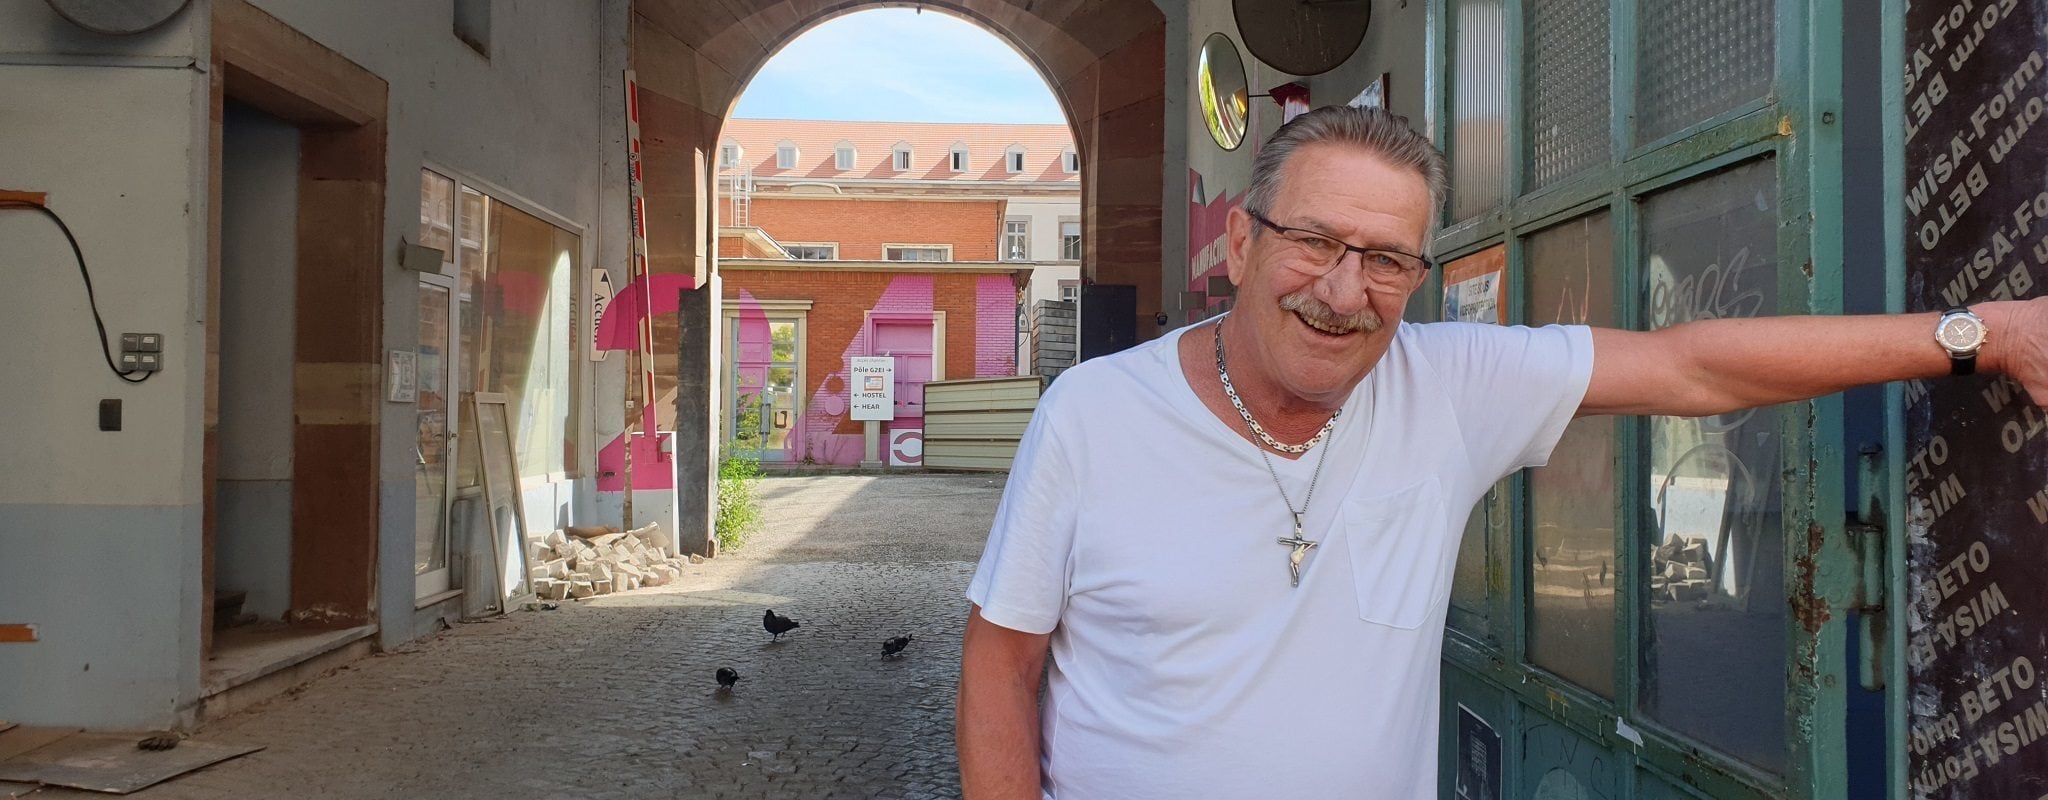 Jean-Claude Meyer, 70 ans à la Krutenau : « C’était un quartier haut-les-mains »